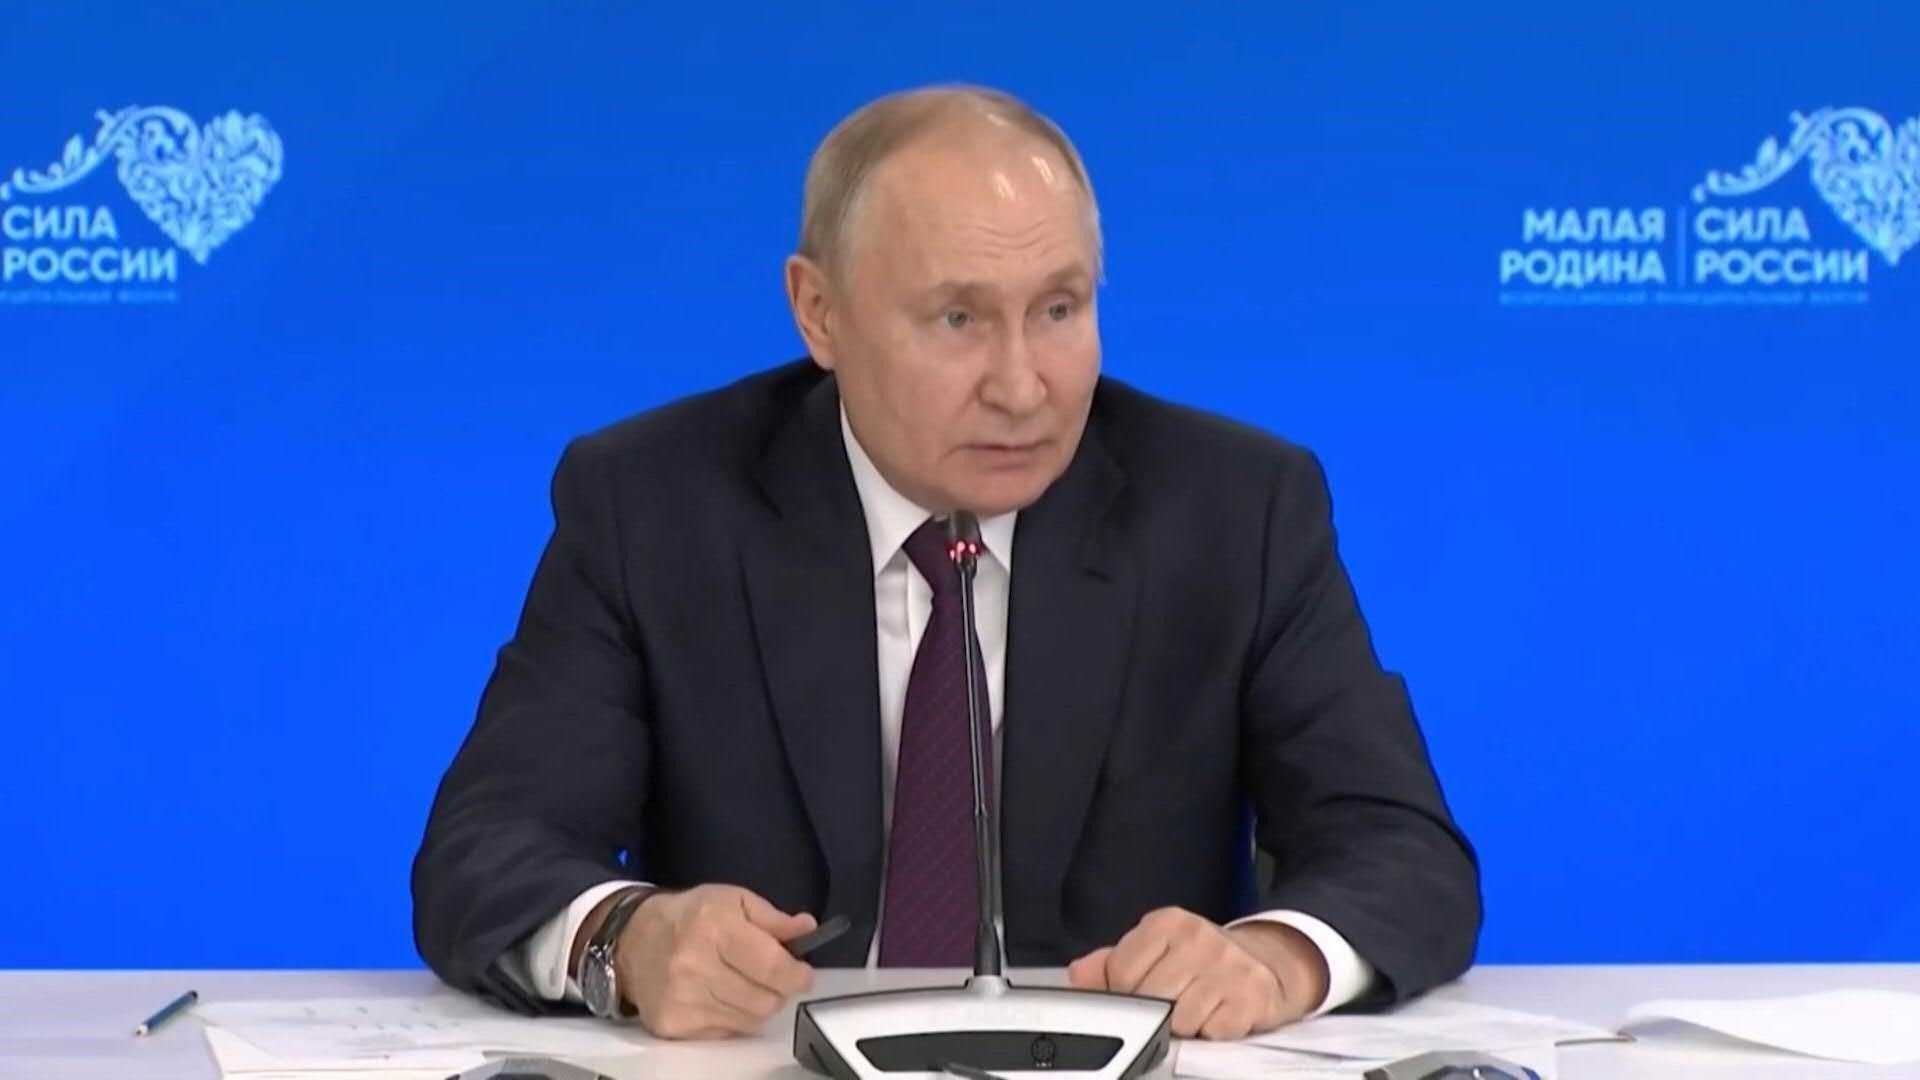 Putin: Ukraine riskiert "irreparablen Schlag"